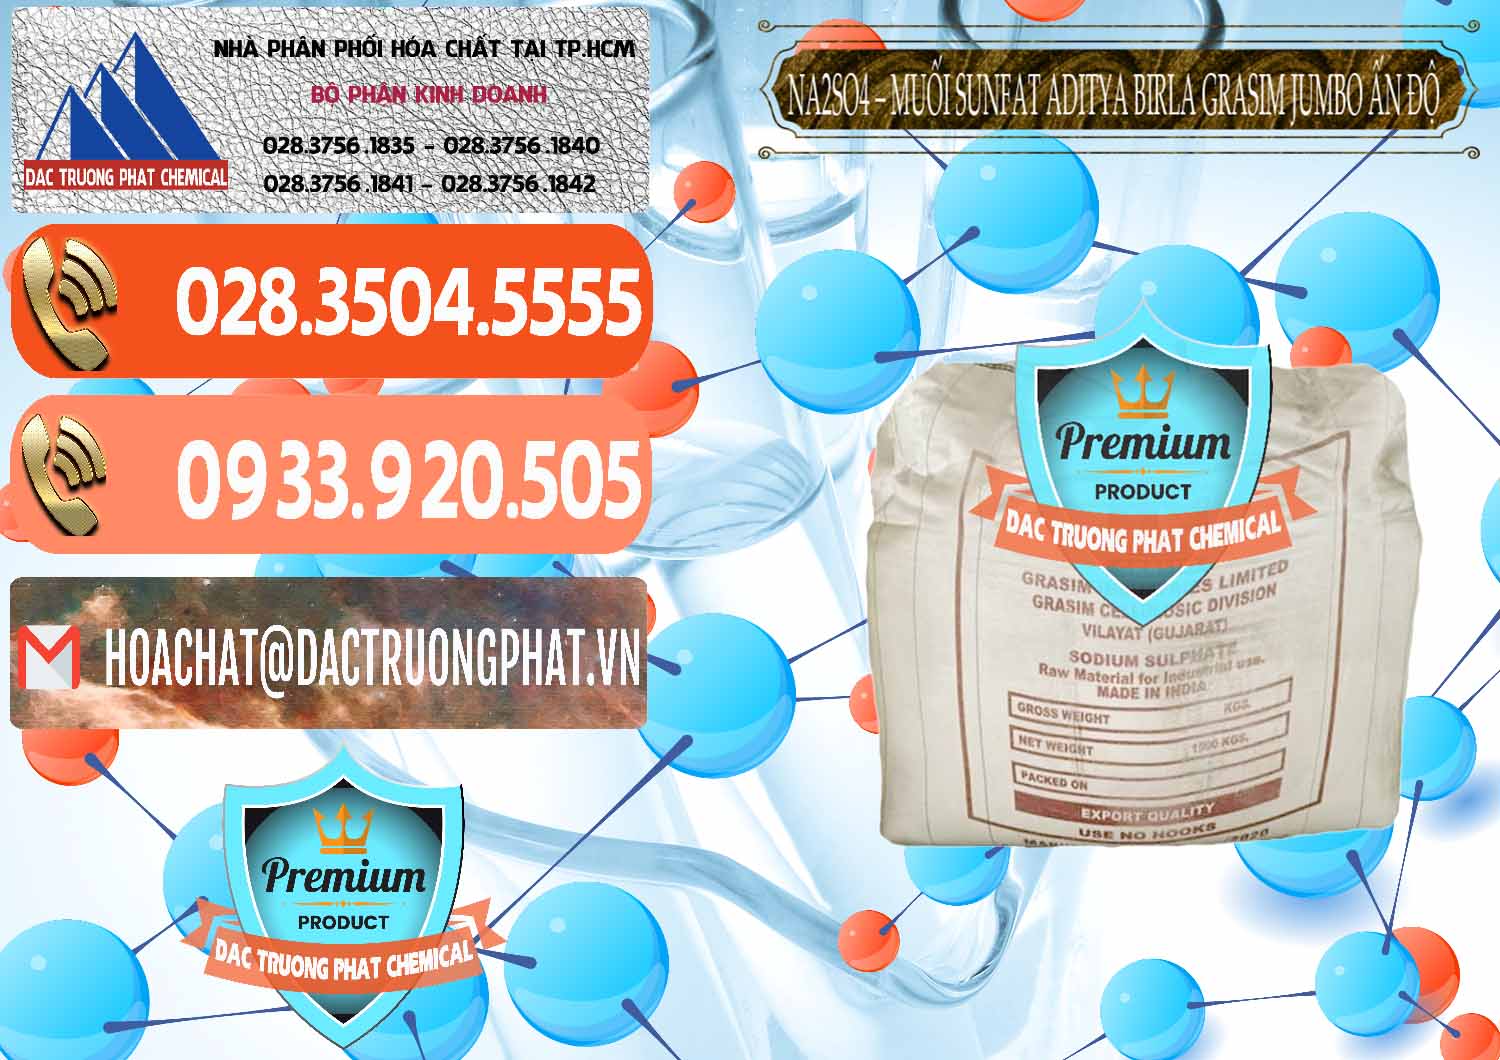 Cty bán và phân phối Sodium Sulphate - Muối Sunfat Na2SO4 Jumbo Bành Aditya Birla Grasim Ấn Độ India - 0357 - Chuyên phân phối & kinh doanh hóa chất tại TP.HCM - hoachatmientay.com